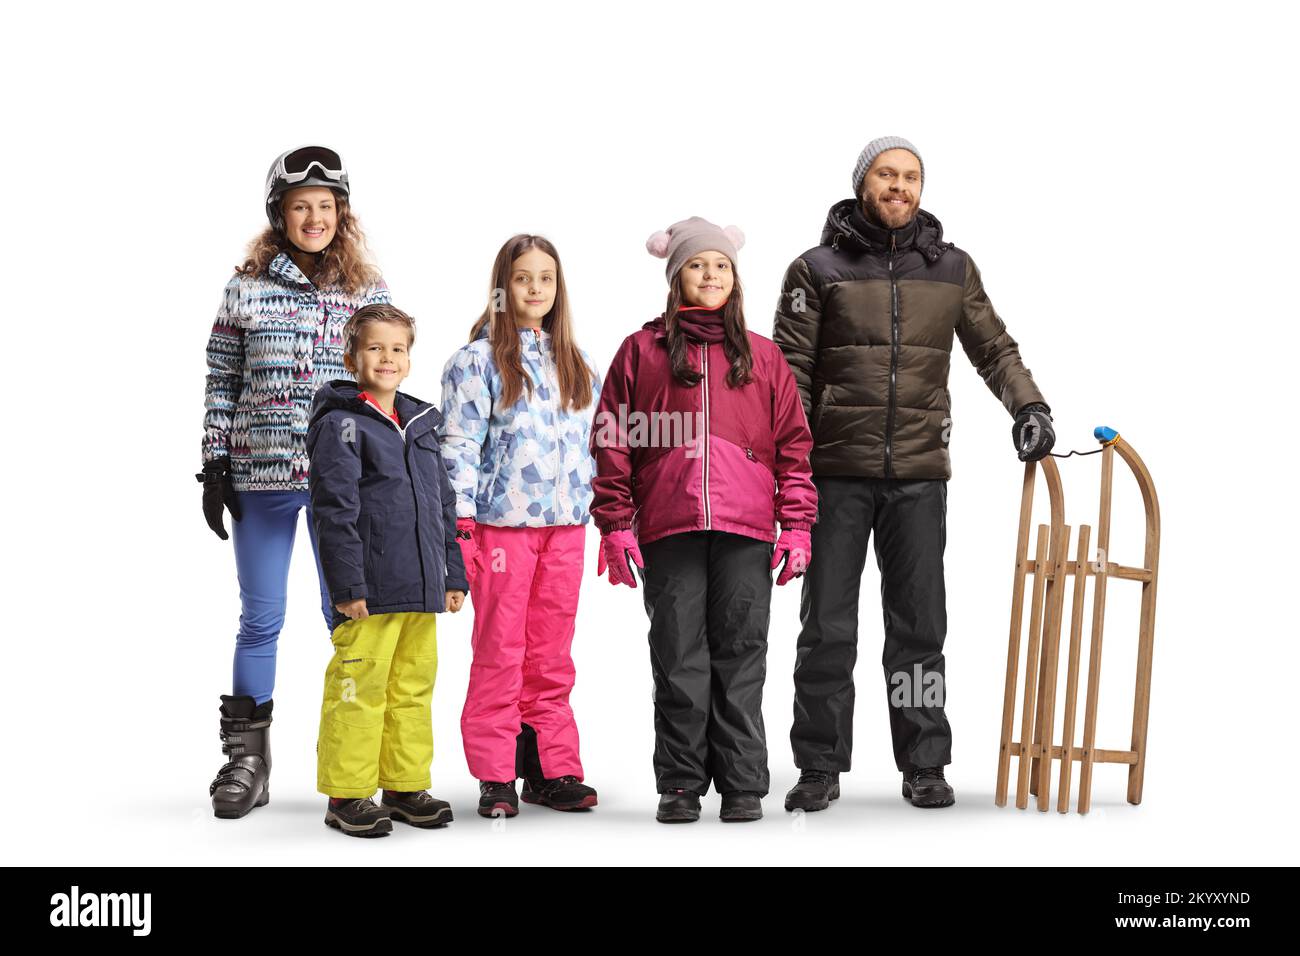 Giovane uomo e donna con bambini in abiti invernali posati con una slitta di legno isolata su sfondo bianco Foto Stock